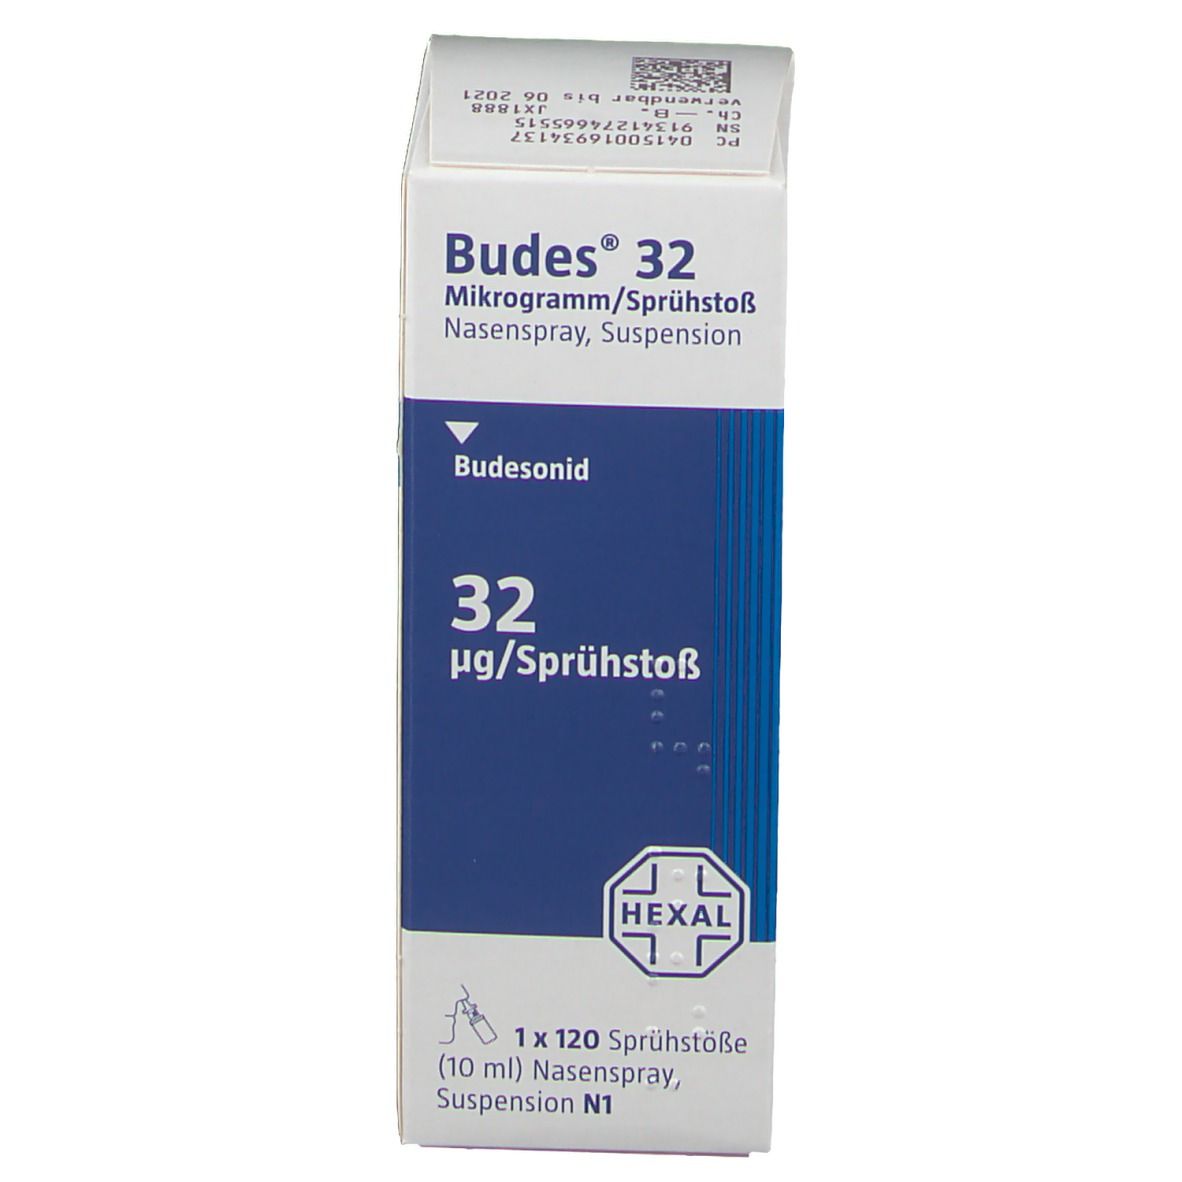 Budes® Nasenspray 32 µg/Sprühstoß